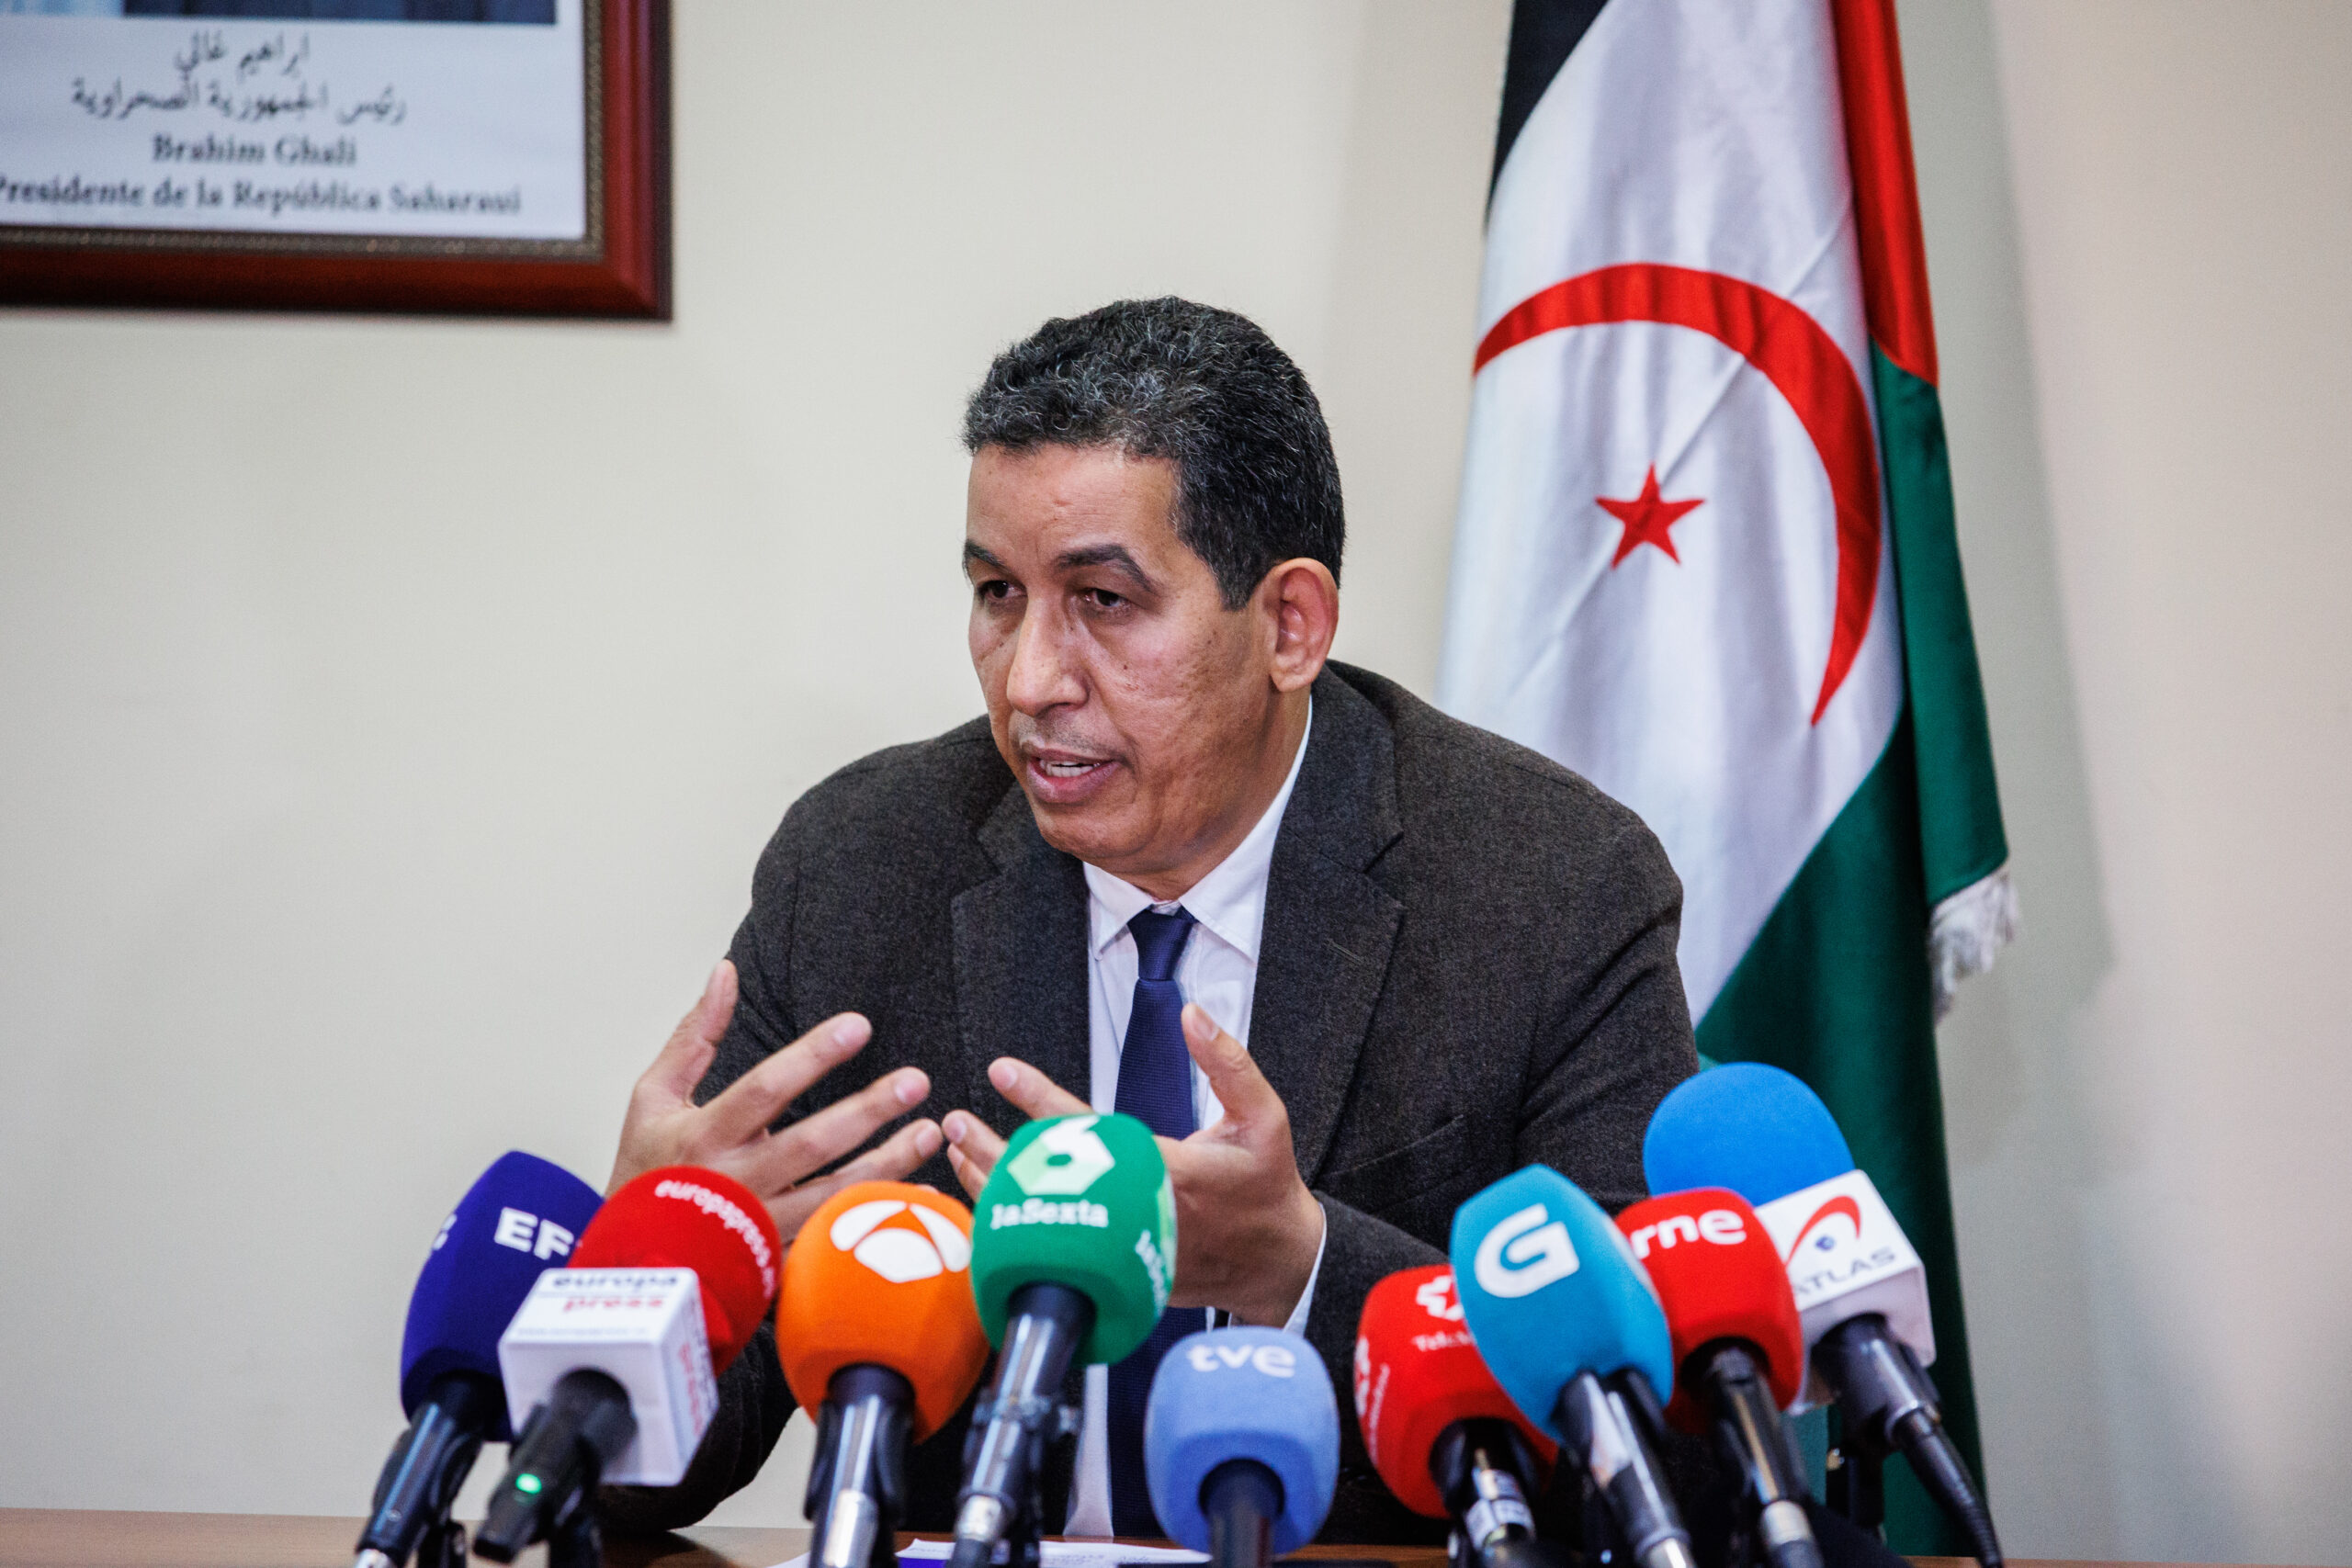 El Polisario pide al Gobierno que aclare si incluye el Sáhara como parte de Marruecos